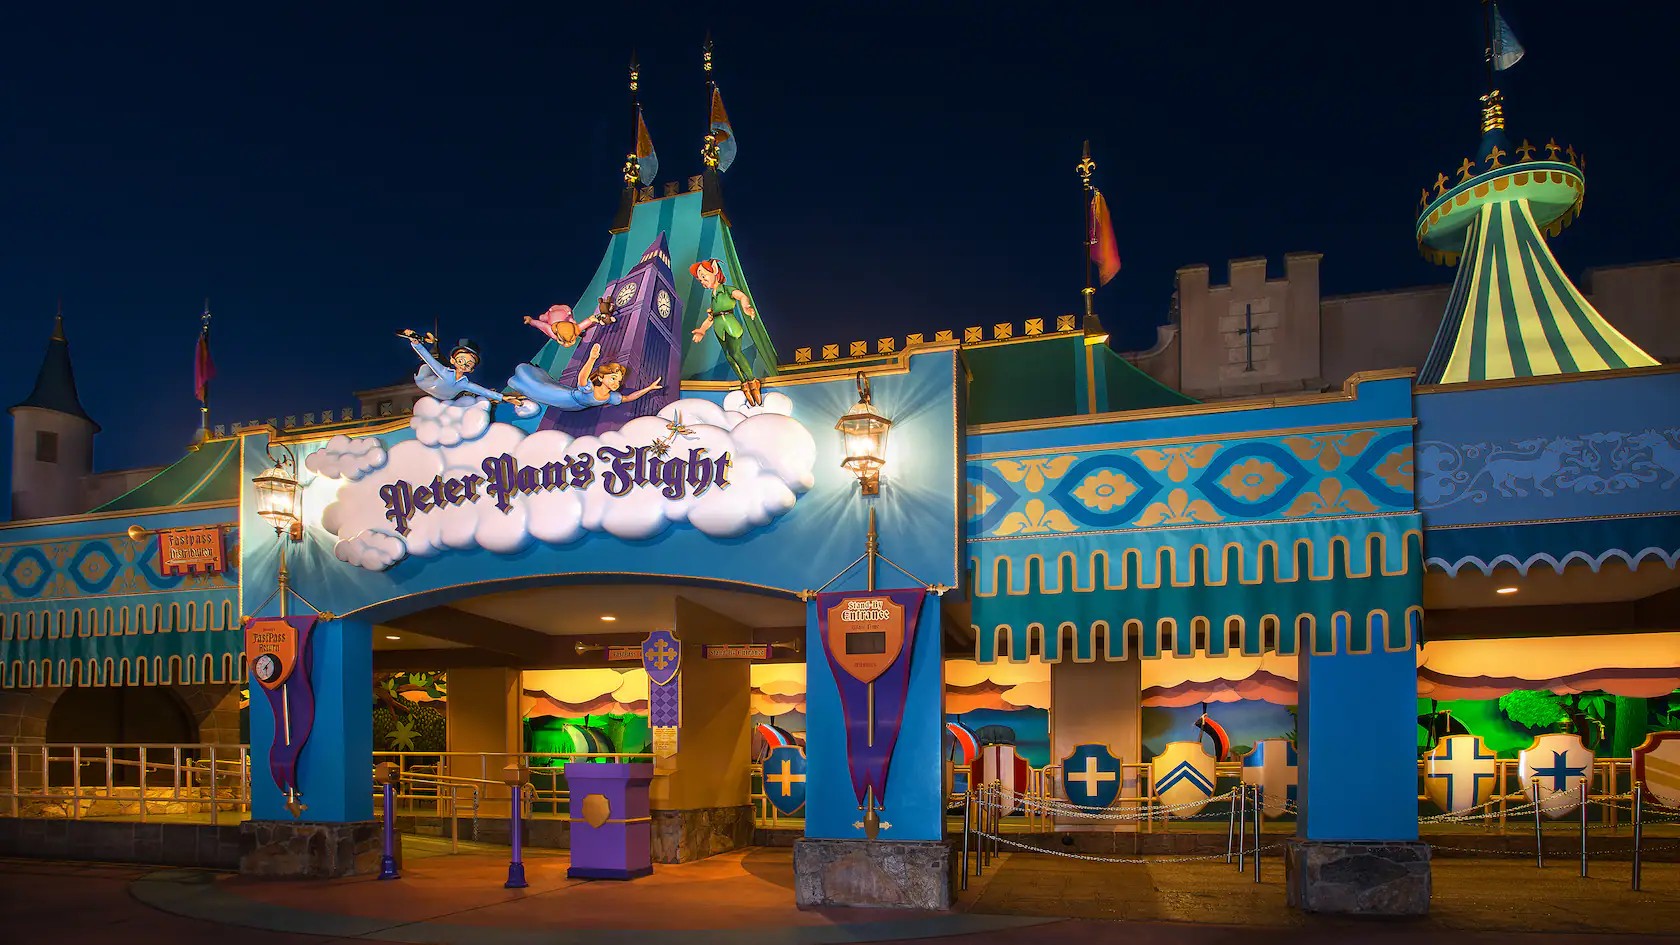 Peter Pan's Flight at Walt Disney World's Magic Kingdom